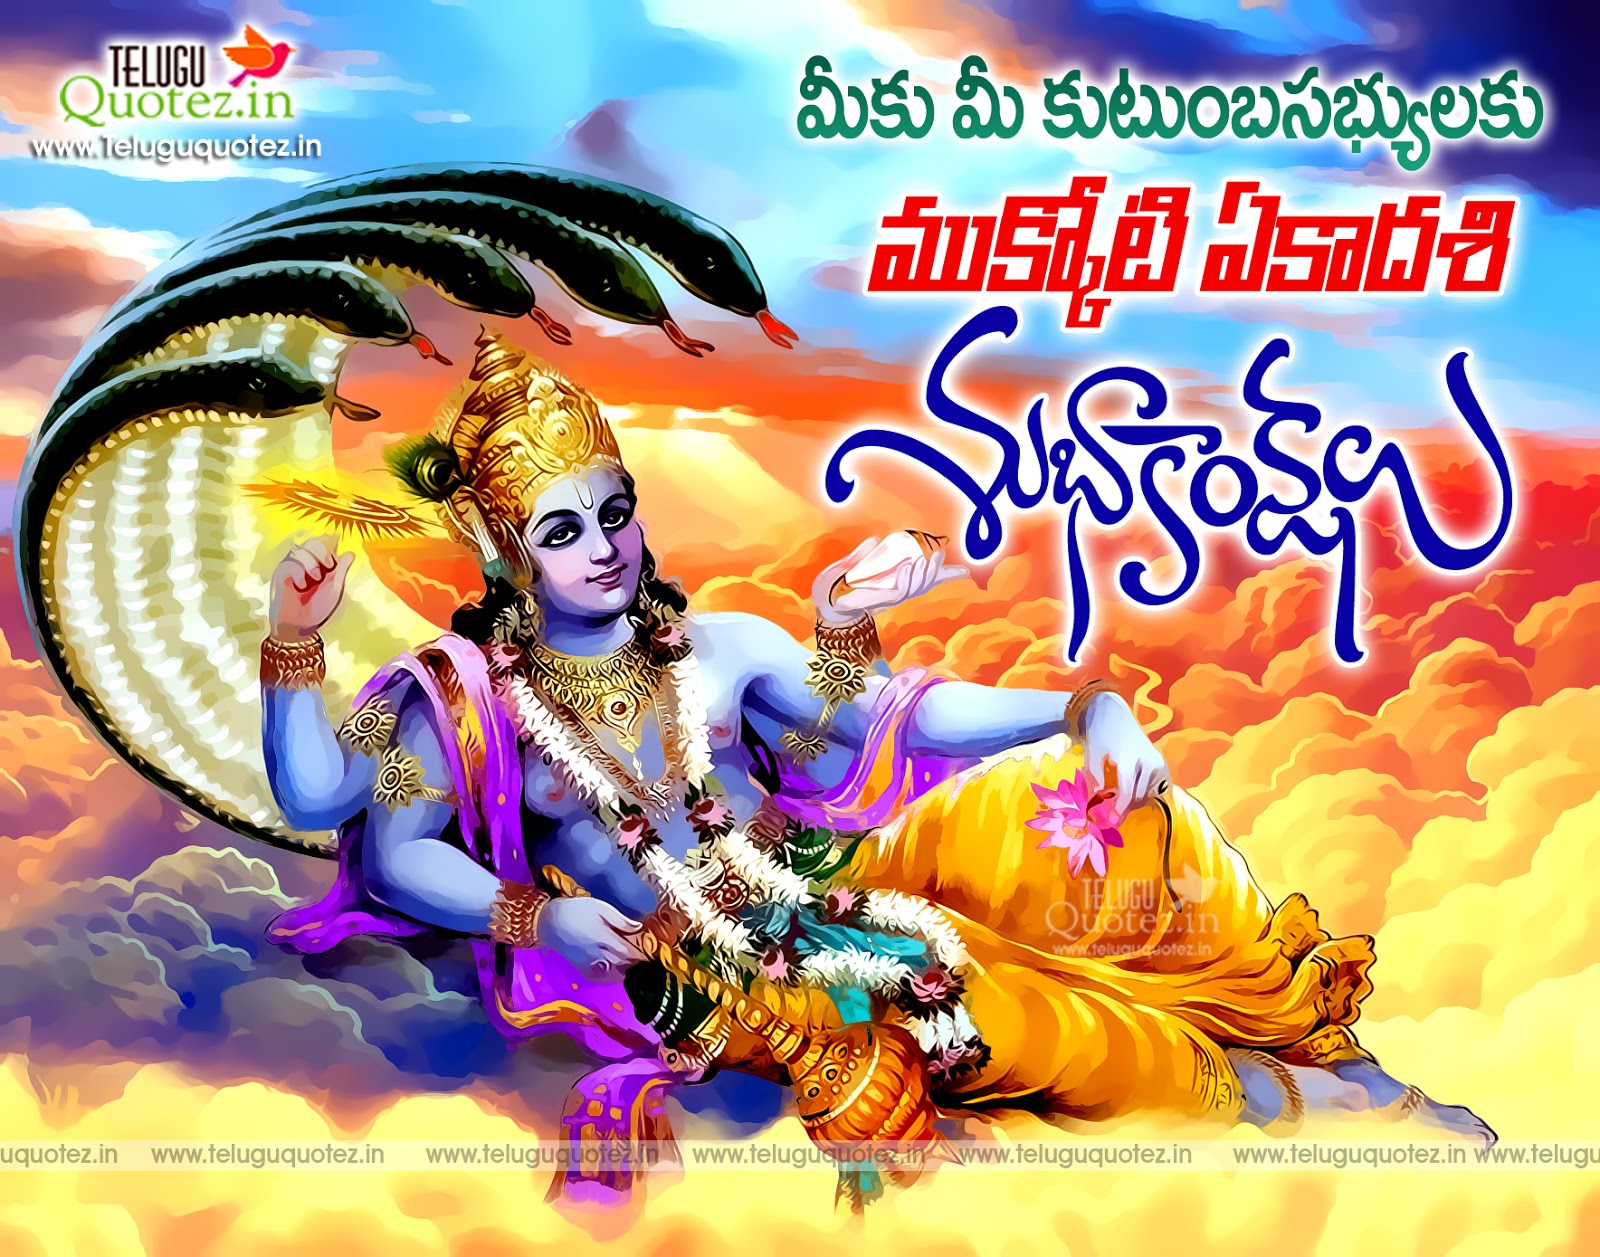 Mukkoti Ekadasi Latest Telugu Quotes With Images Teluguquotez - Vaikunta Ekadasi 2018 Wishes , HD Wallpaper & Backgrounds